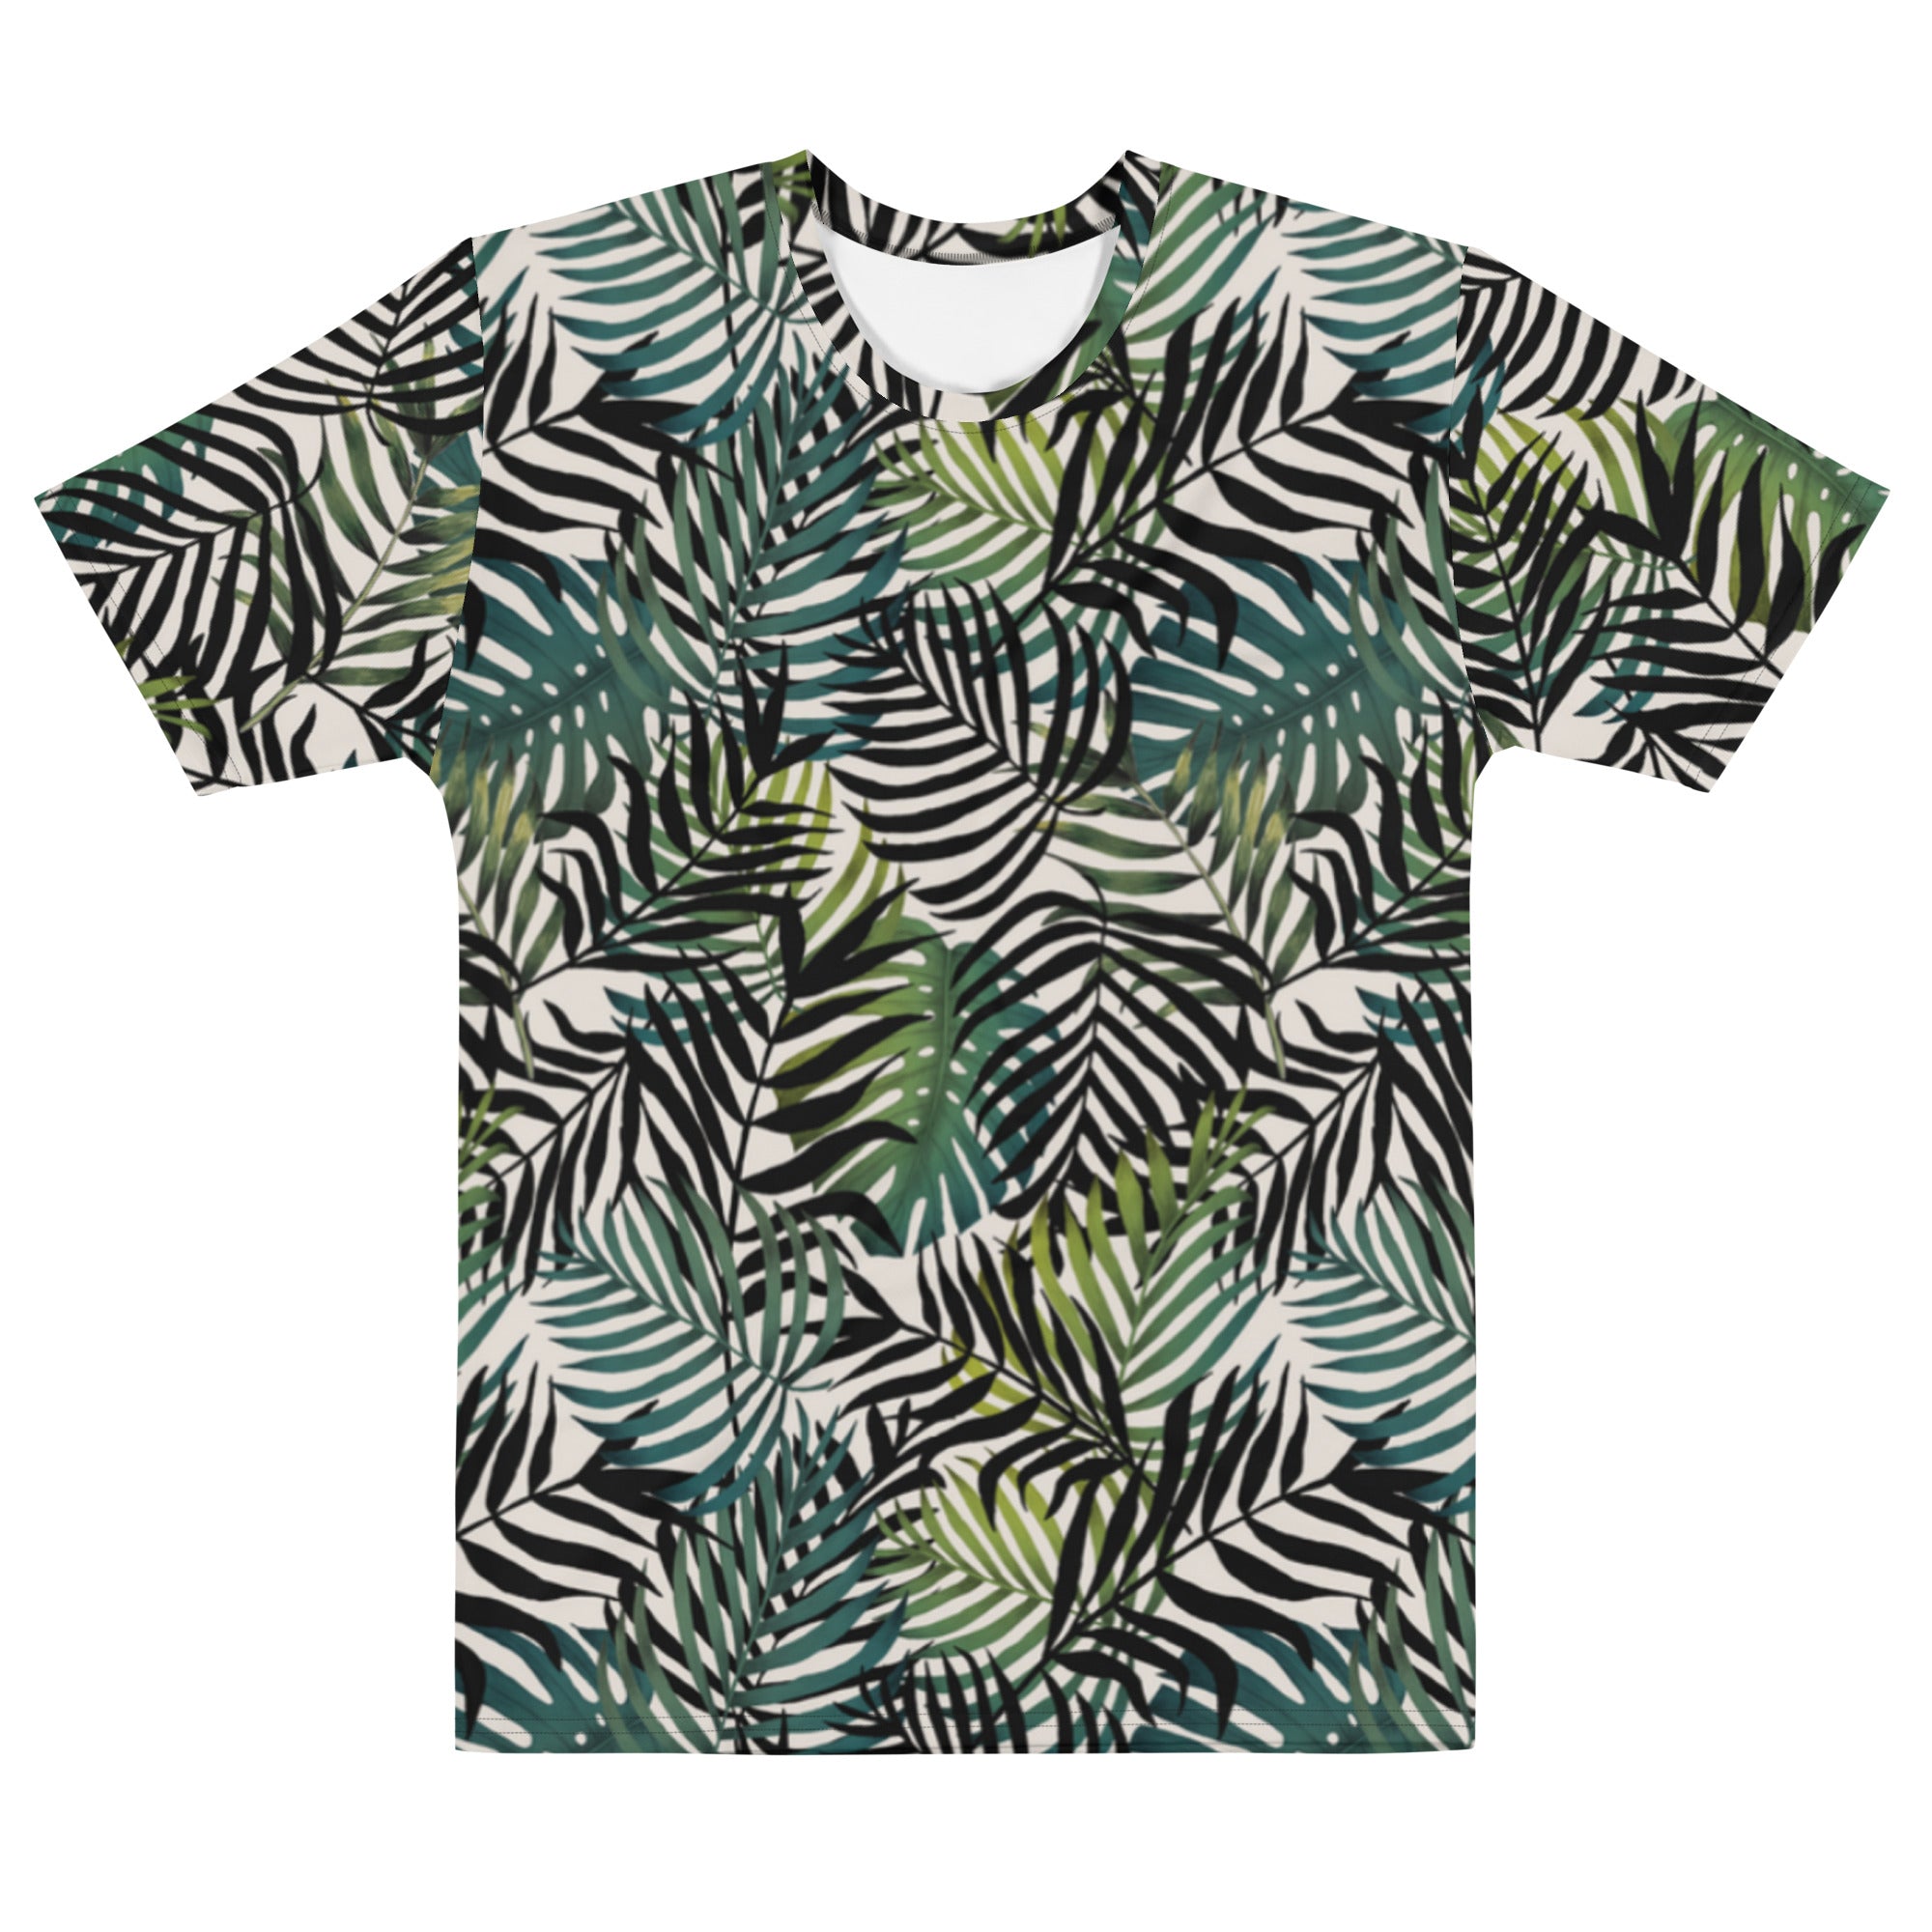 Safari Shirt